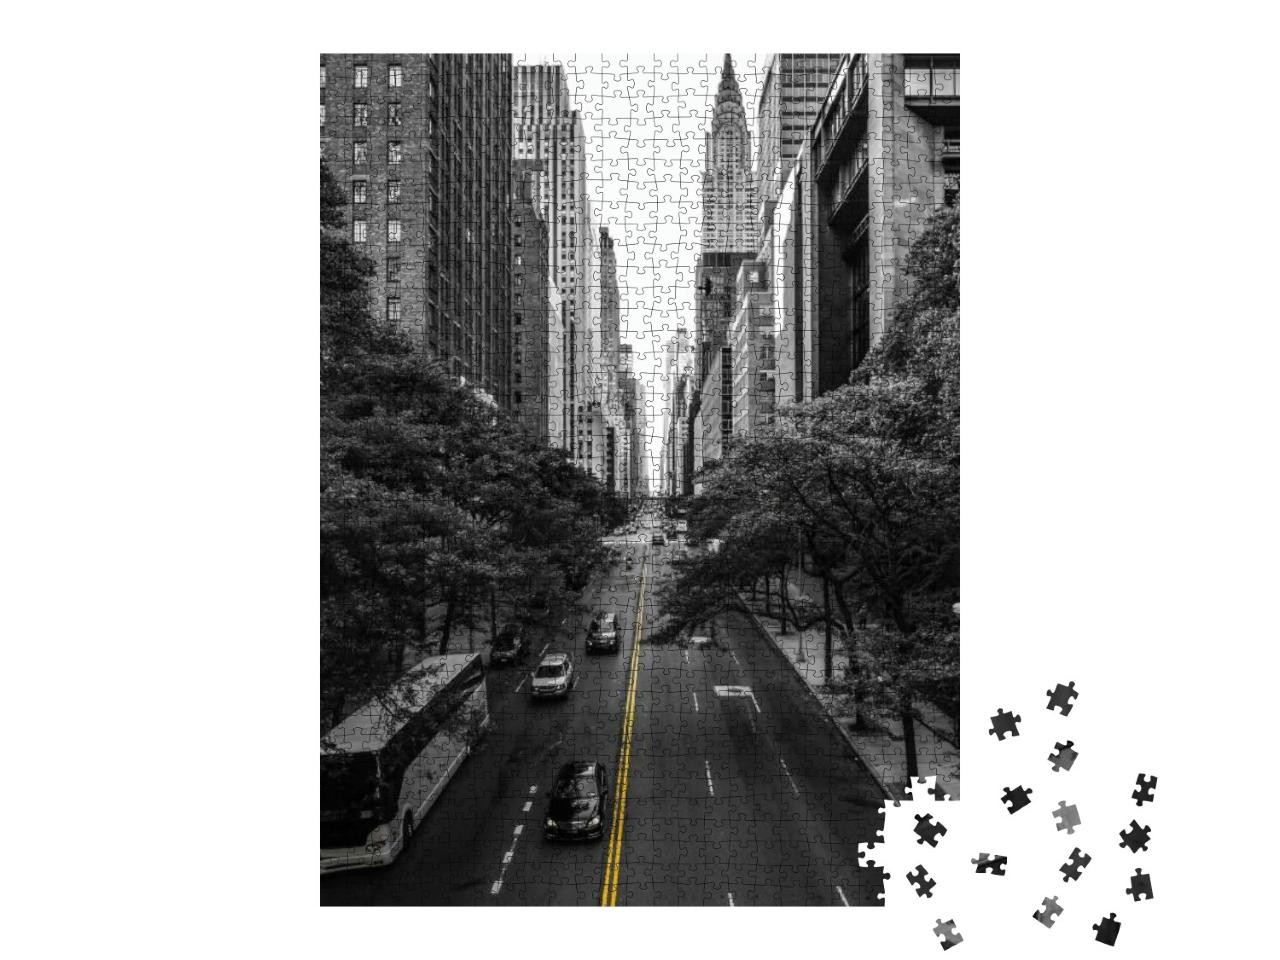 Puzzle 1000 Teile „Endlose Straße in Manhattan, New York“